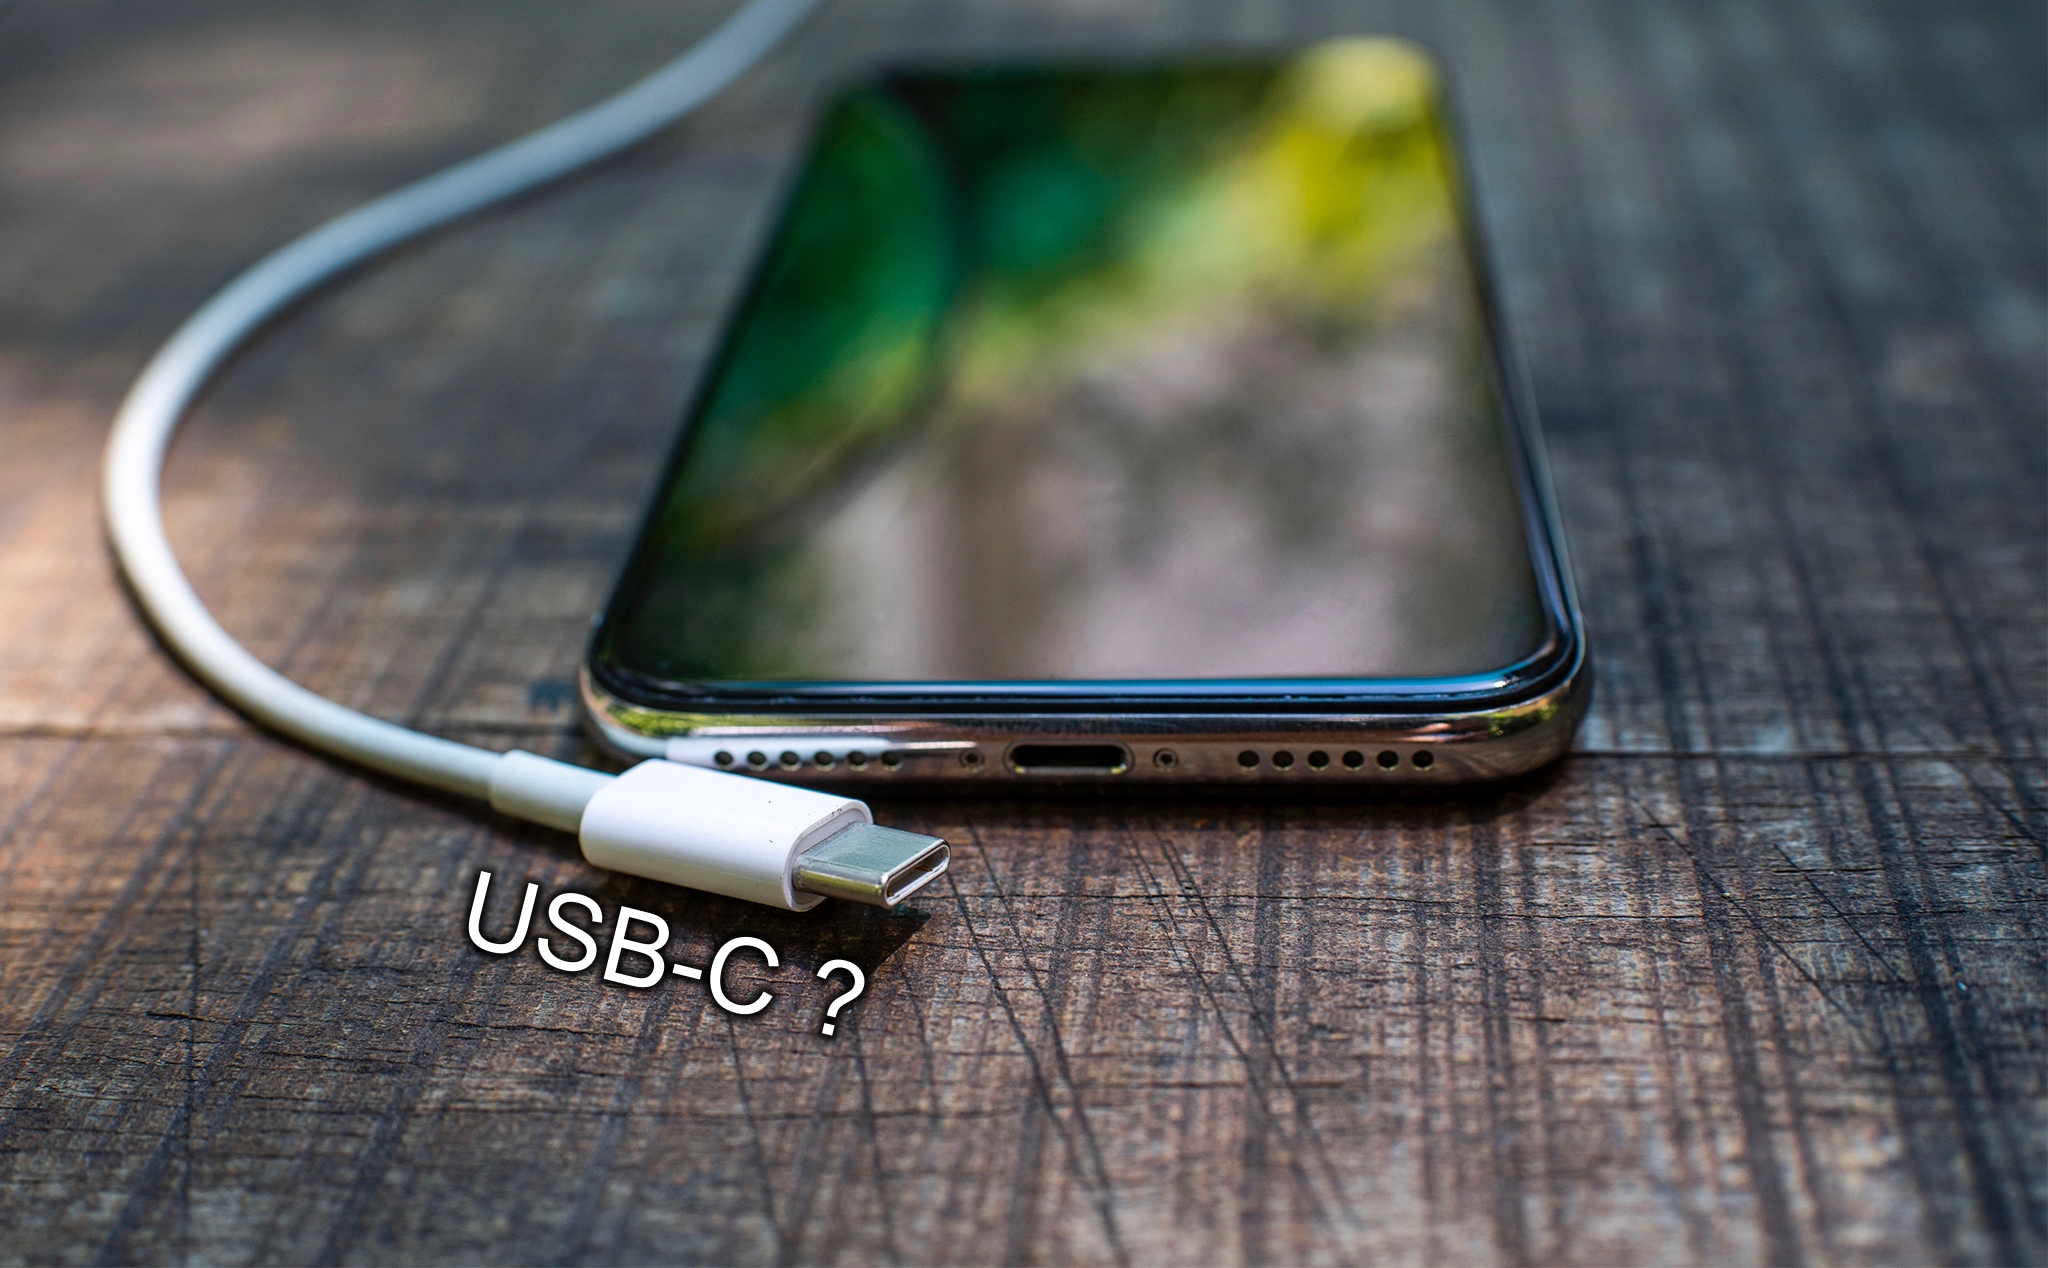 [Chia sẻ] Về chuyện iPhone chuyển sang dùng USB-C, liệu có khả thi ?